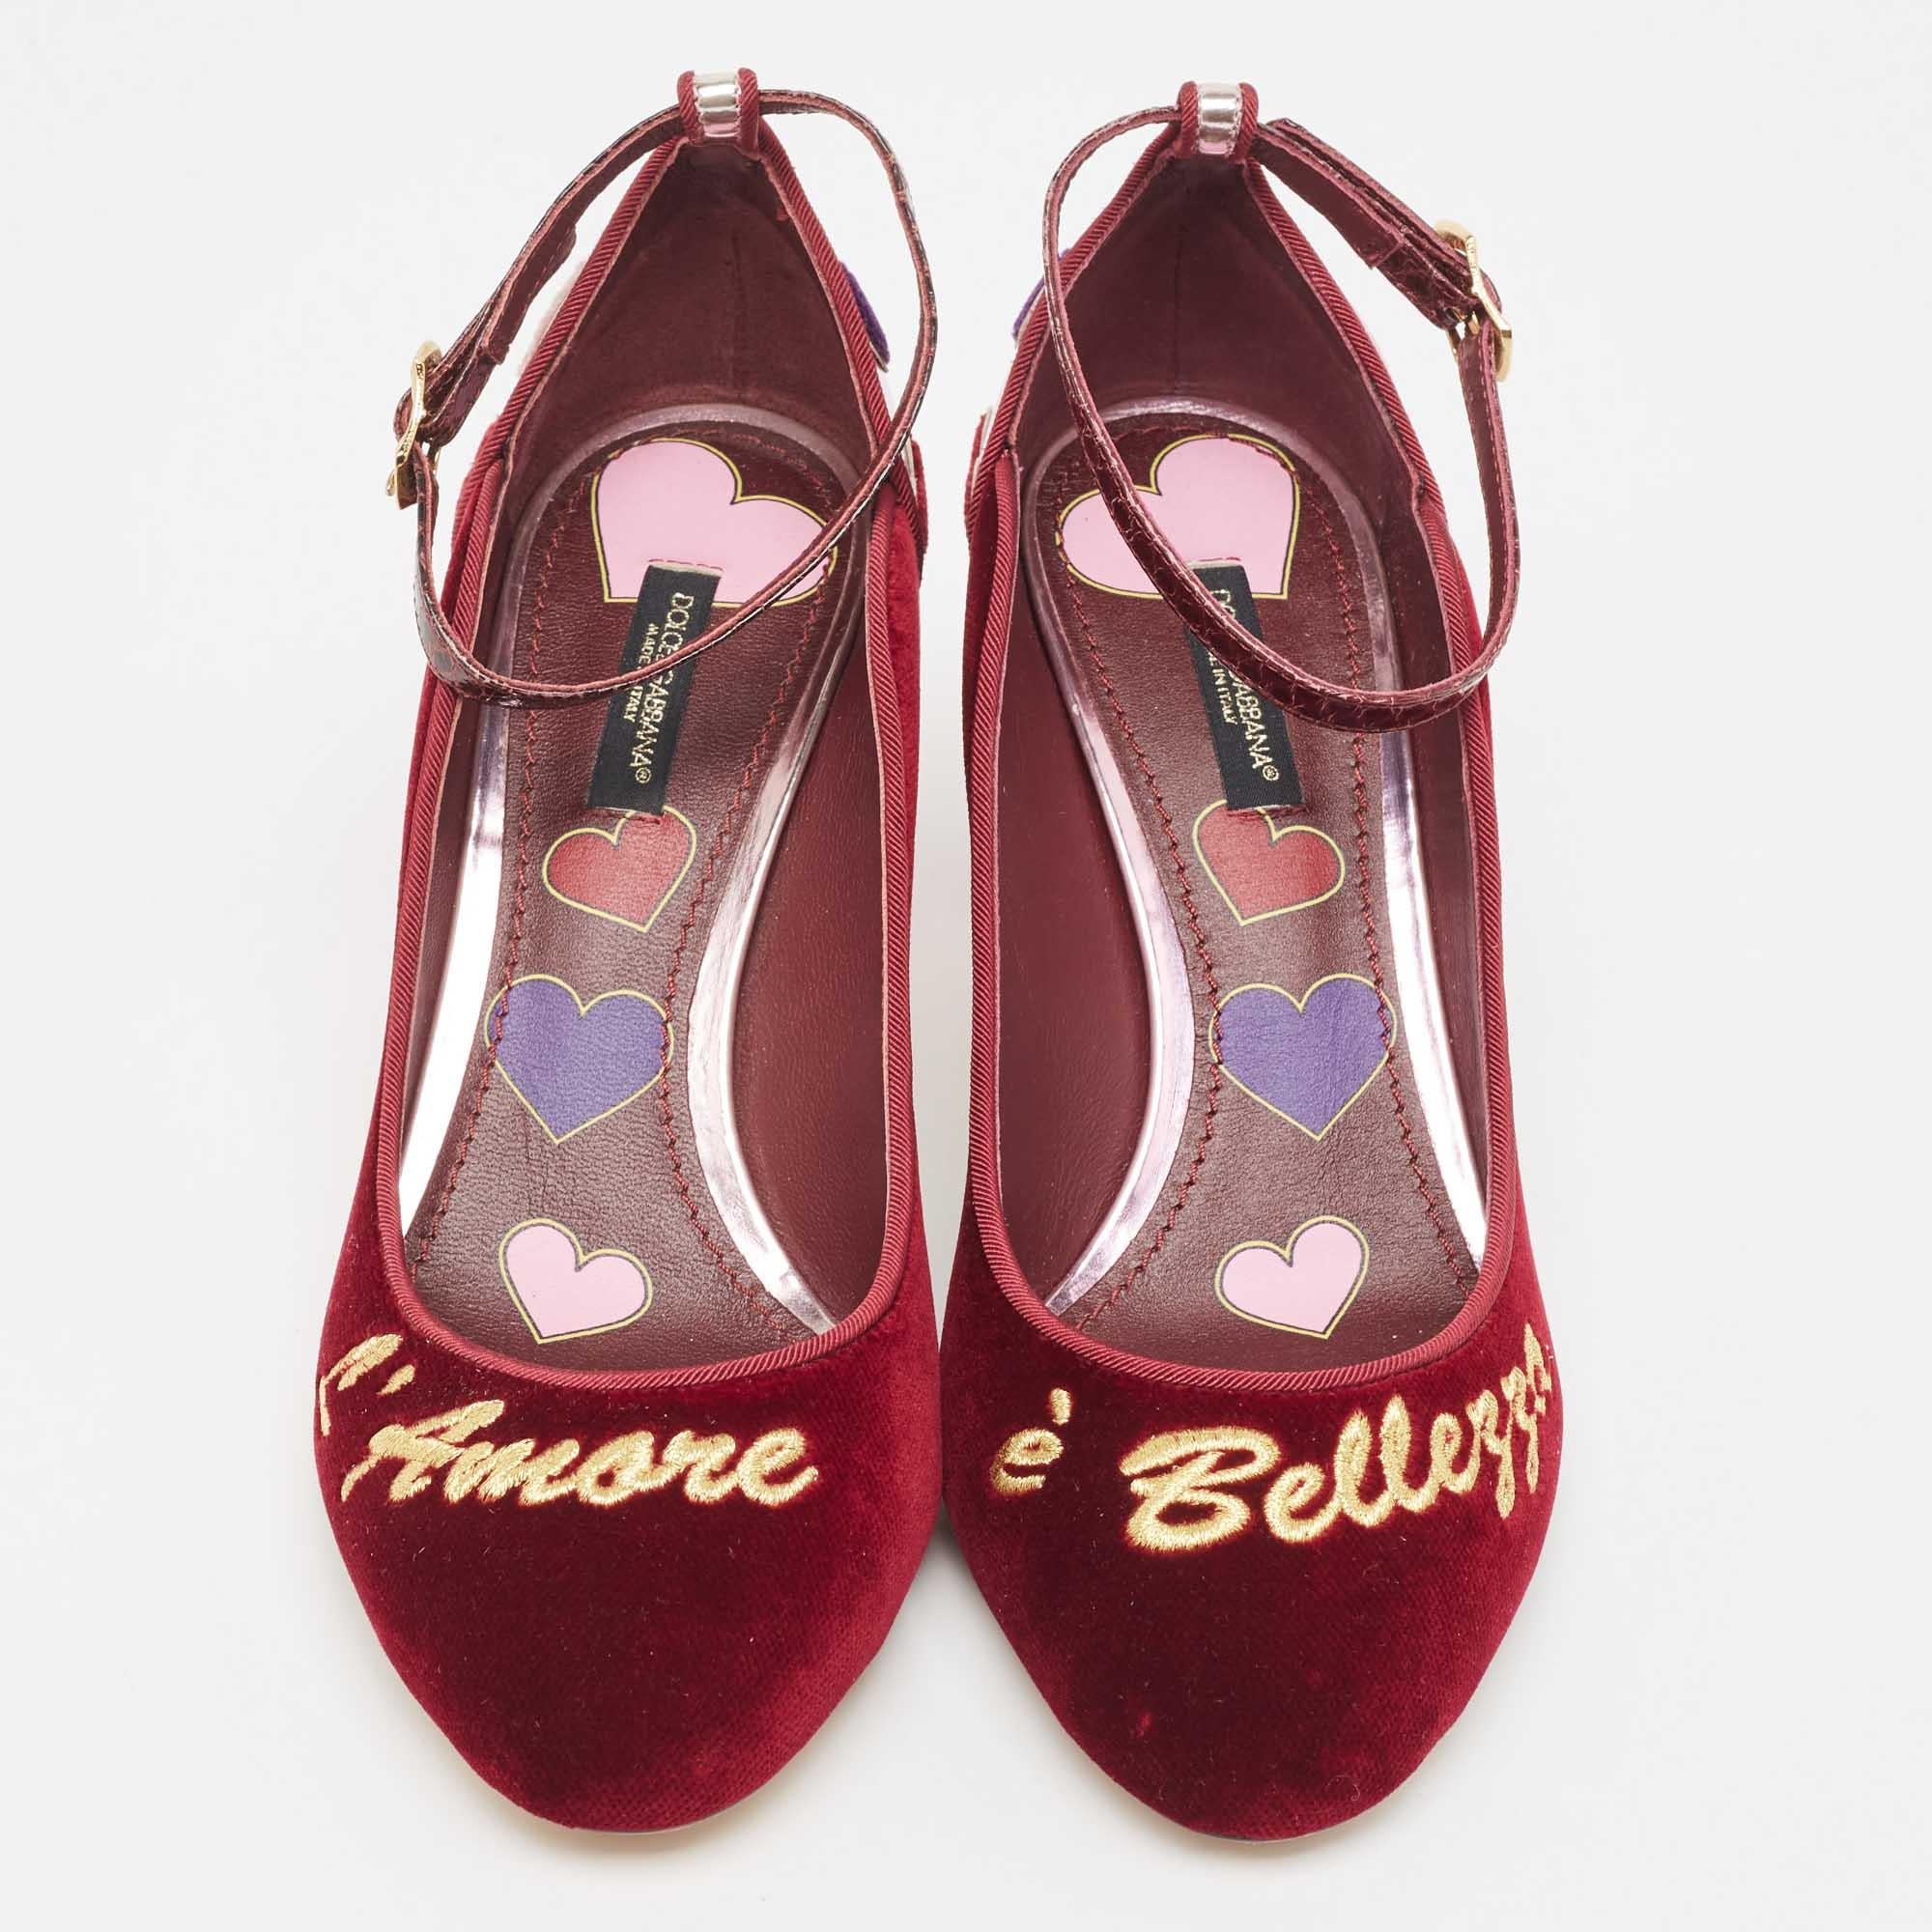 Faites-vous remarquer avec ces escarpins Dolce & Gabbana pour femme. Impeccablement confectionnés, ces talons chics offrent à la fois mode et confort, rehaussant votre look à chaque pas gracieux.

Comprend : Boîte d'origine

